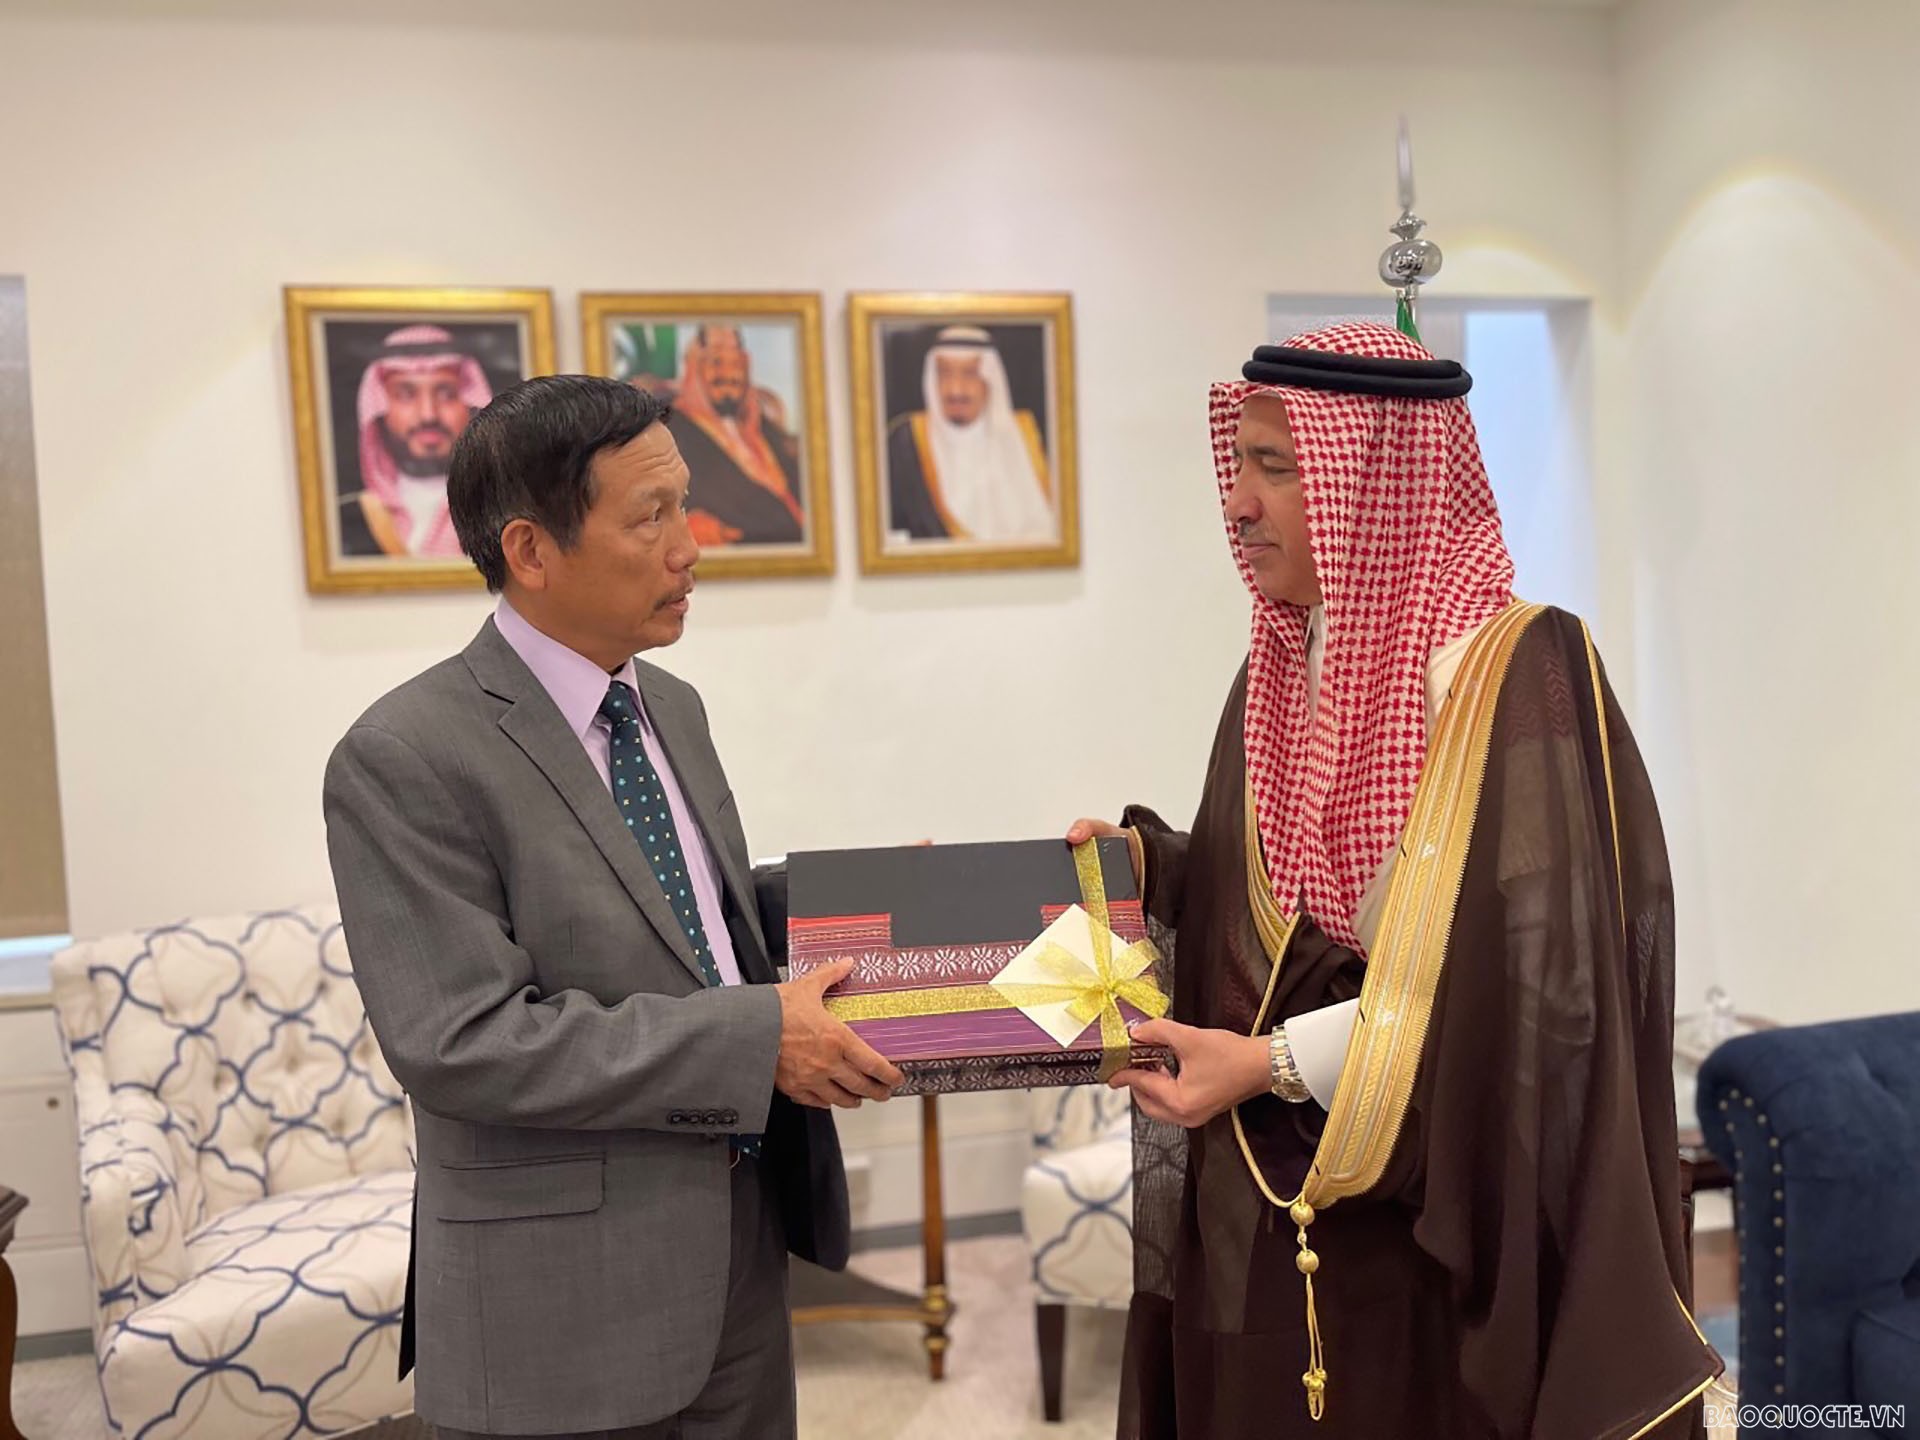 Ambassador Vu Viet Dung bids farewell to Deputy Foreign Minister Khalid bin Faisal Al-Sahli.